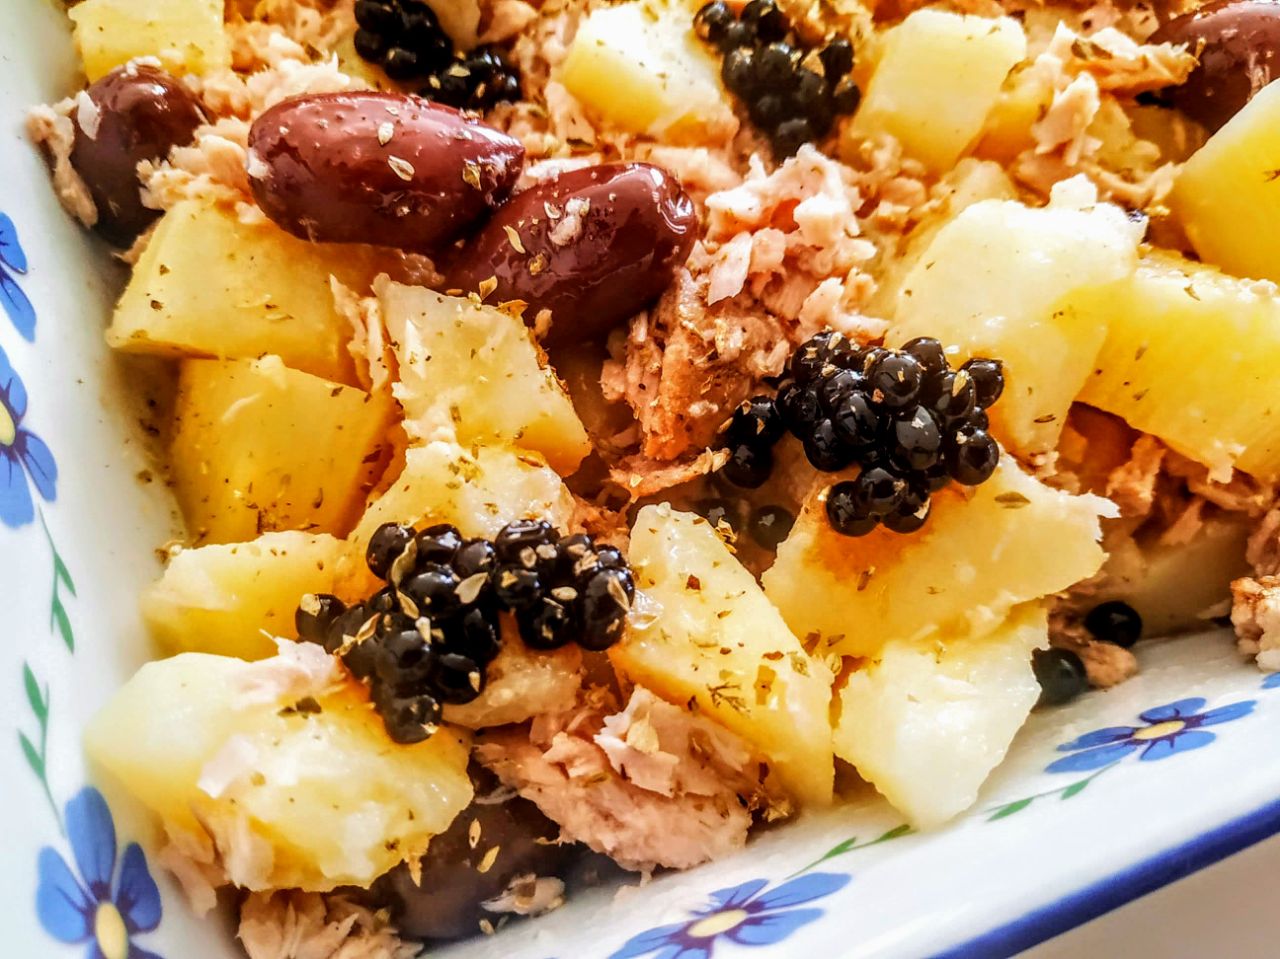 Ricette economiche facili e veloci senza glutine e senza lattosio: insalata di patate con tonno all'olio d'oliva olive kalamon e perle di aceto balsamico